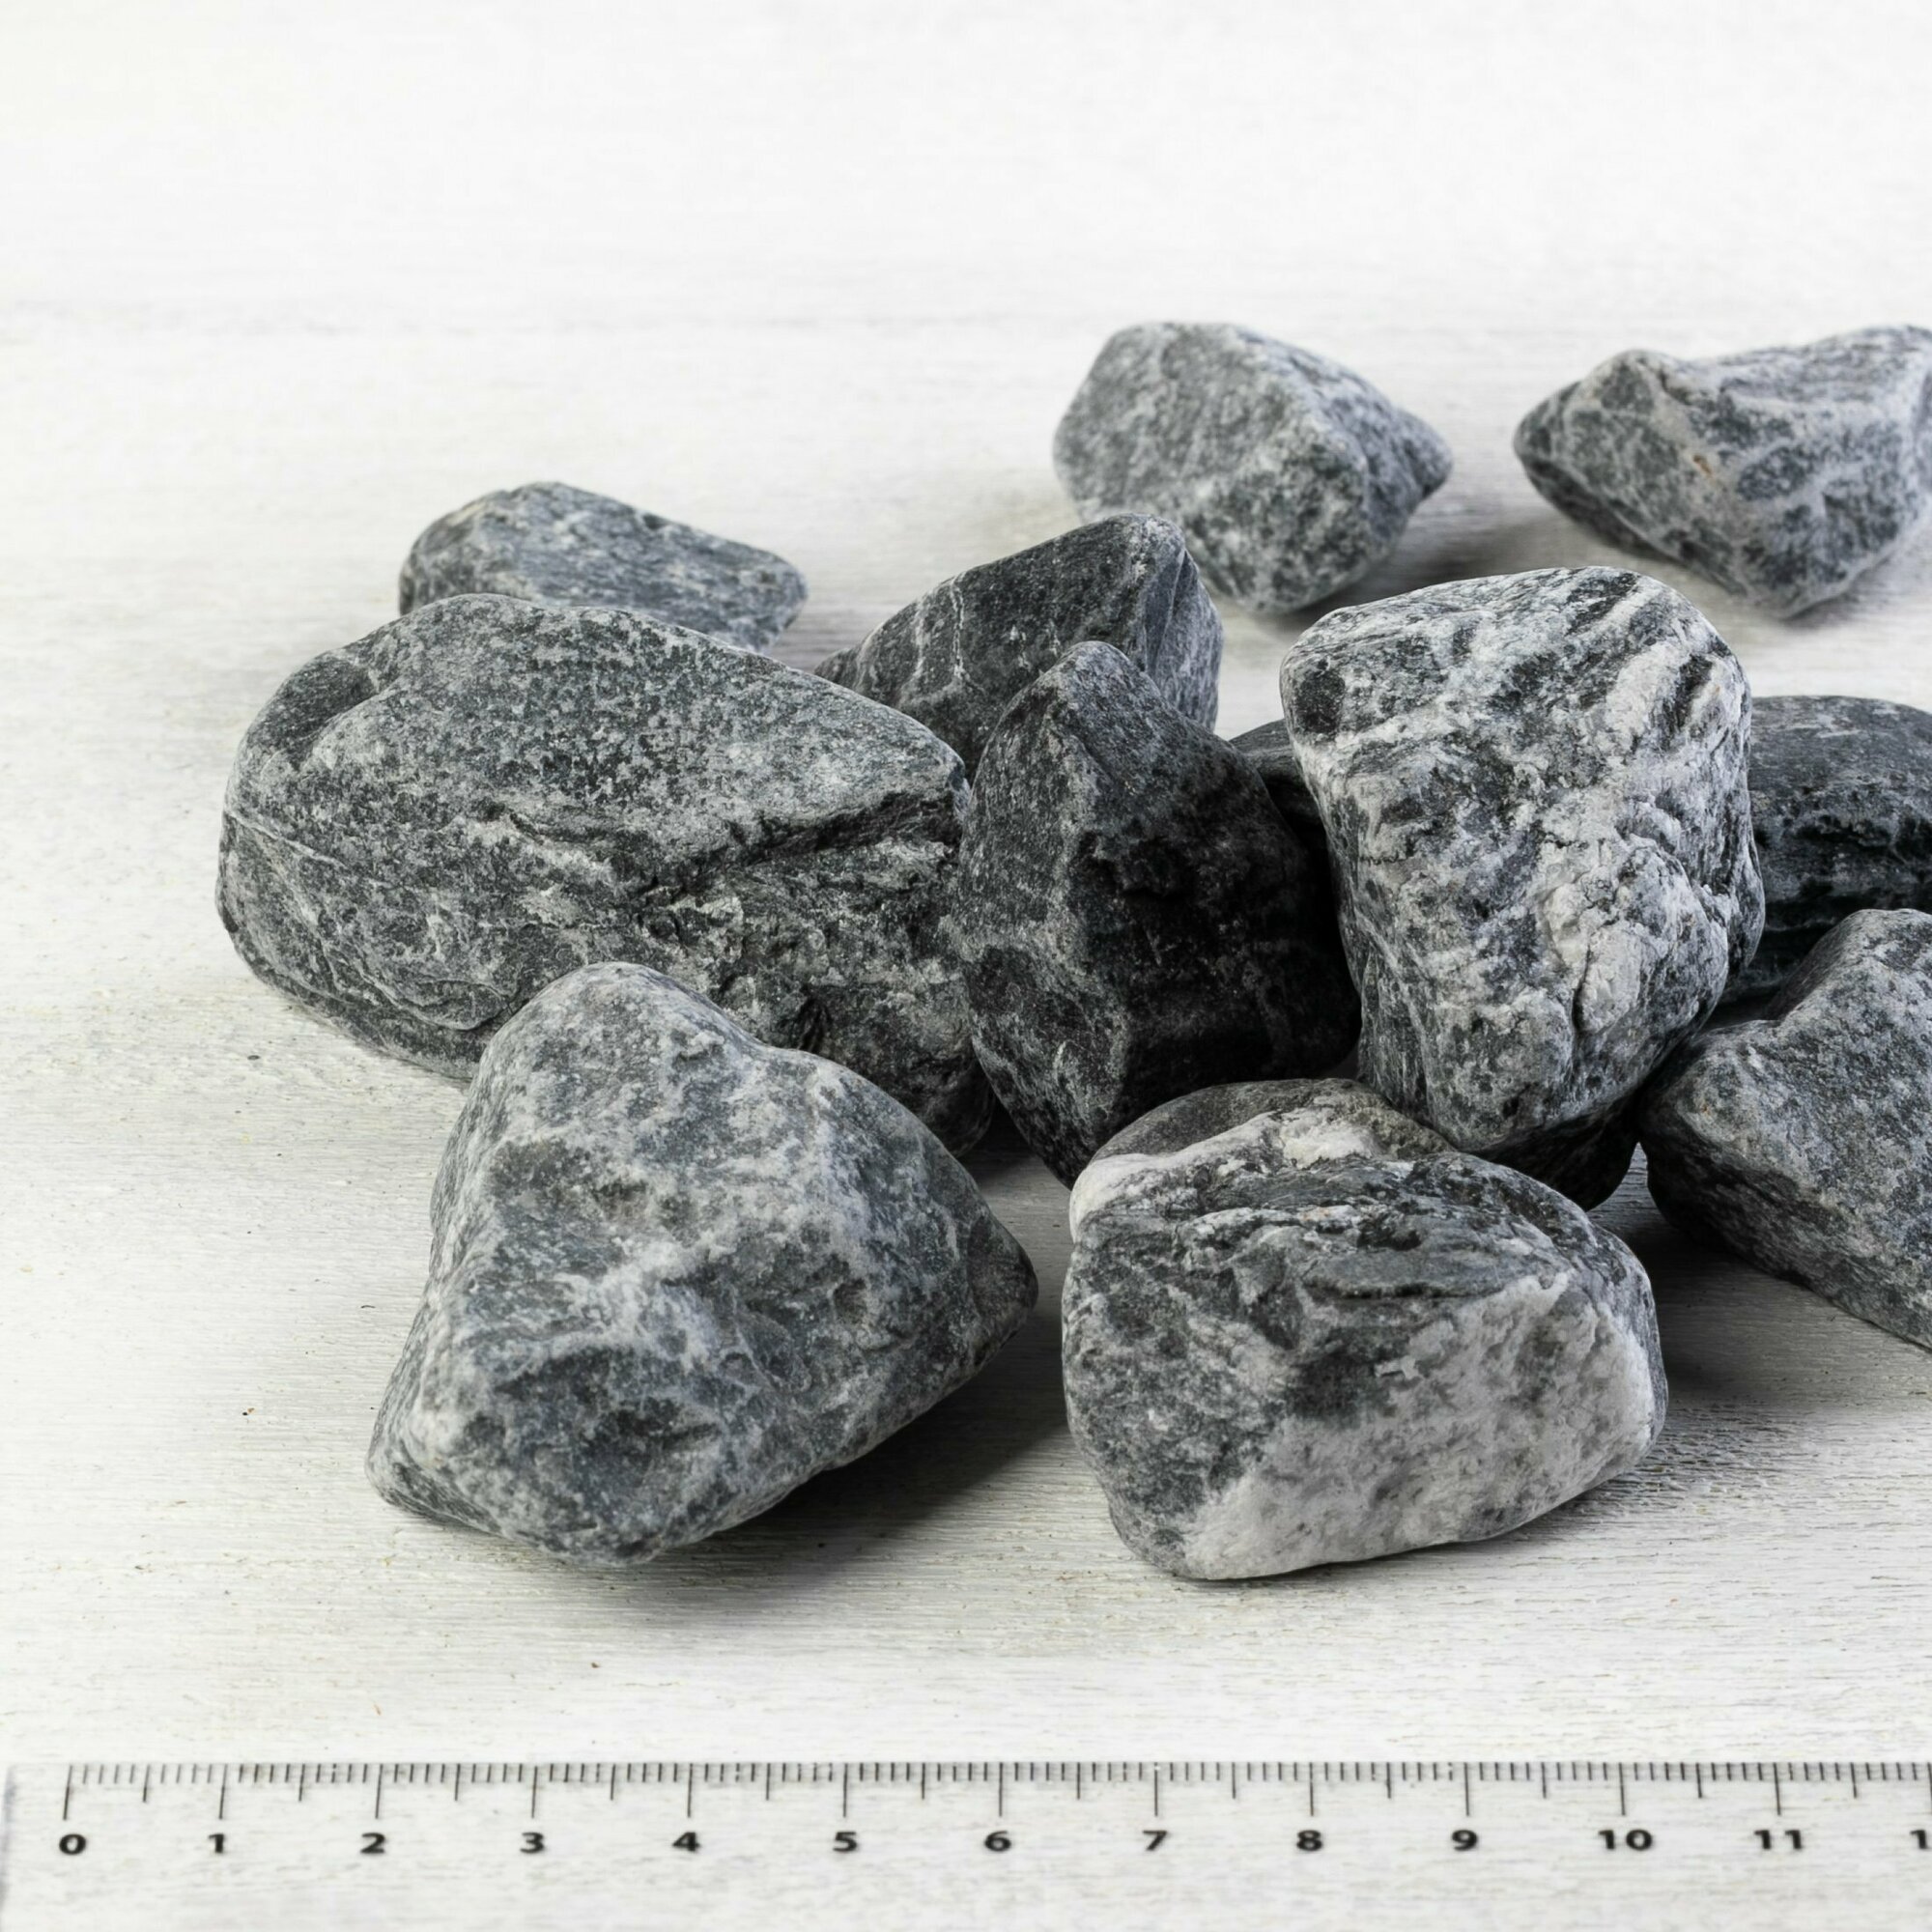 Камень ландшафтный мрамор черный Доломит фракция 20-40 мм 3 кг (319N). Декоративный грунт натуральный камень